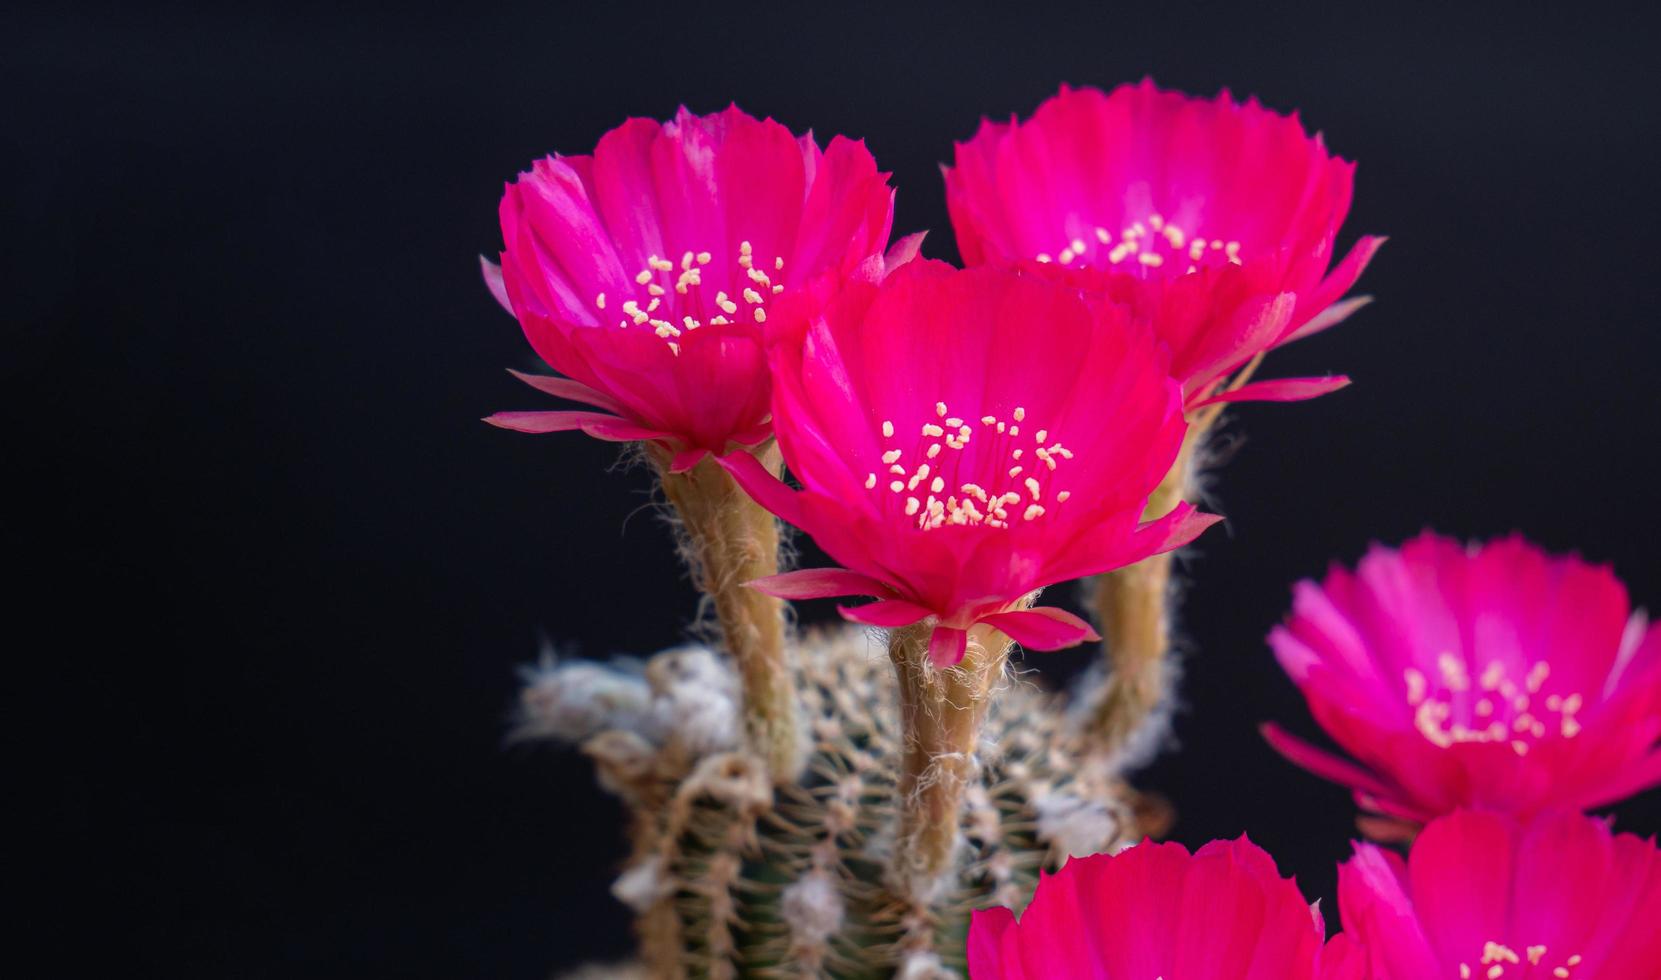 flores de color rosa oscuro o rojo claro de un cactus o cactus. grupo de cactus en una olla pequeña. invernaderos para cultivar plantas en las casas. disparando en el estudio de fondo negro. foto